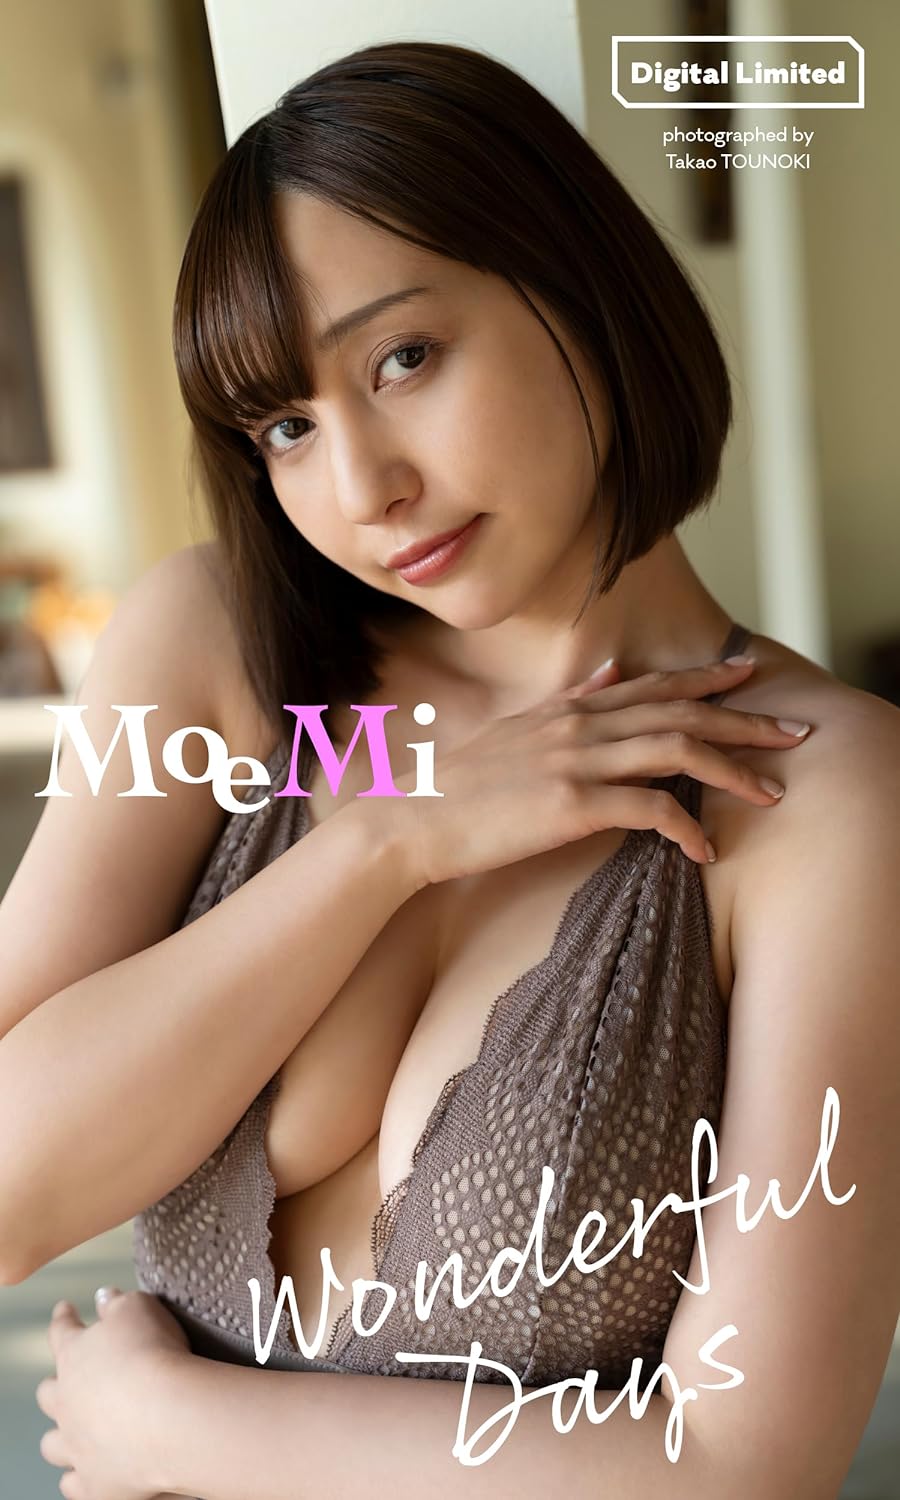 【デジタル限定】MoeMi写真集「Wonderful Days」 週プレ PHOTO BOOK Kindle版のサンプル画像